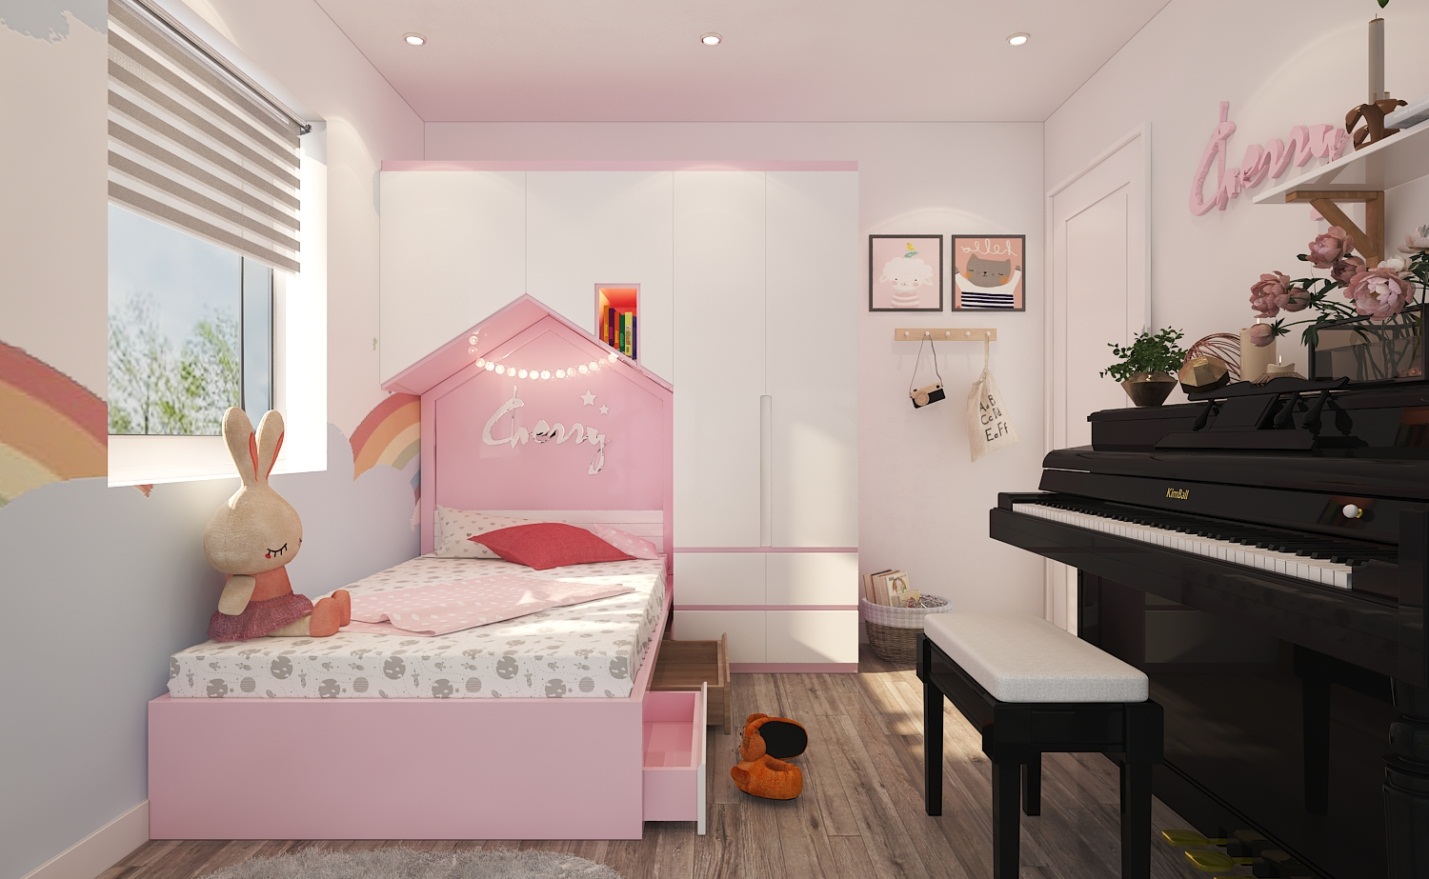 hình ảnh toàn cảnh phòng ngủ bé gái với tông màu hồng dịu ngọt